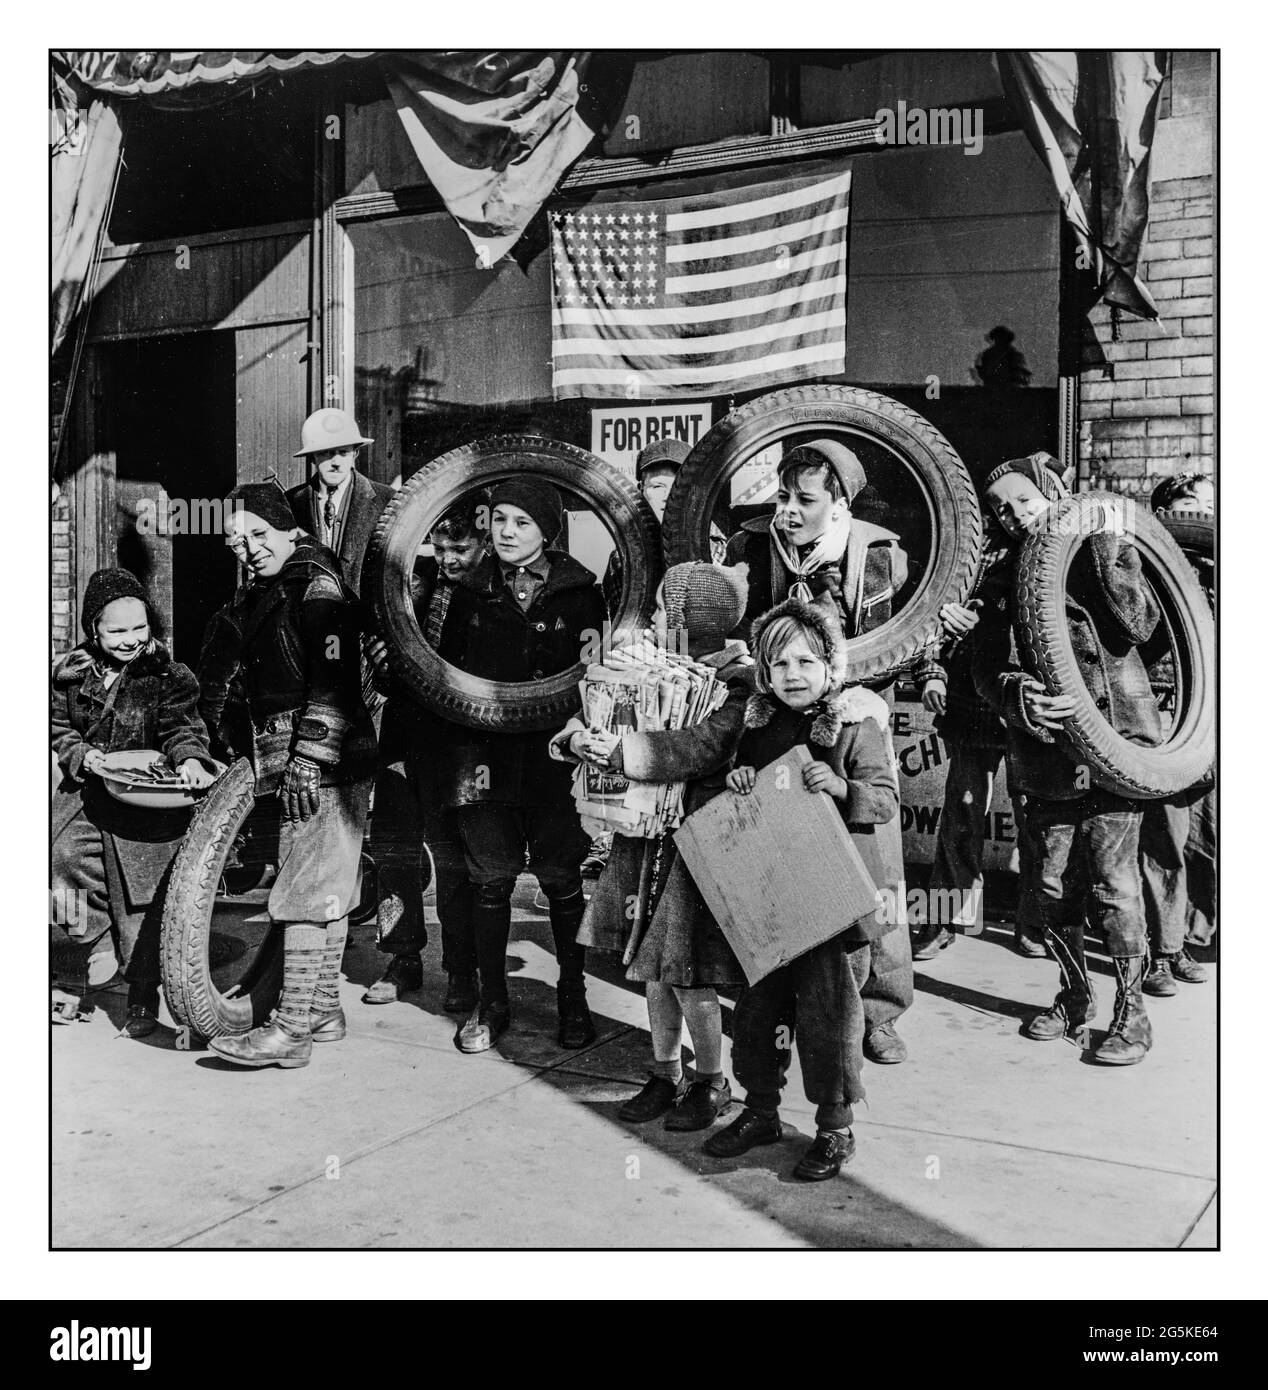 WW2 ROTTAMI DI GOMMA METALLO CARTA ecc per la seconda guerra mondiale degli anni '40 Chicago (nord), Illinois. Bambini e famiglie che portano rottami al quartier generale della difesa civile Jack Delano fotografo 1942 nov Stati Uniti--Illinois--Cook County--Chicago Foto Stock